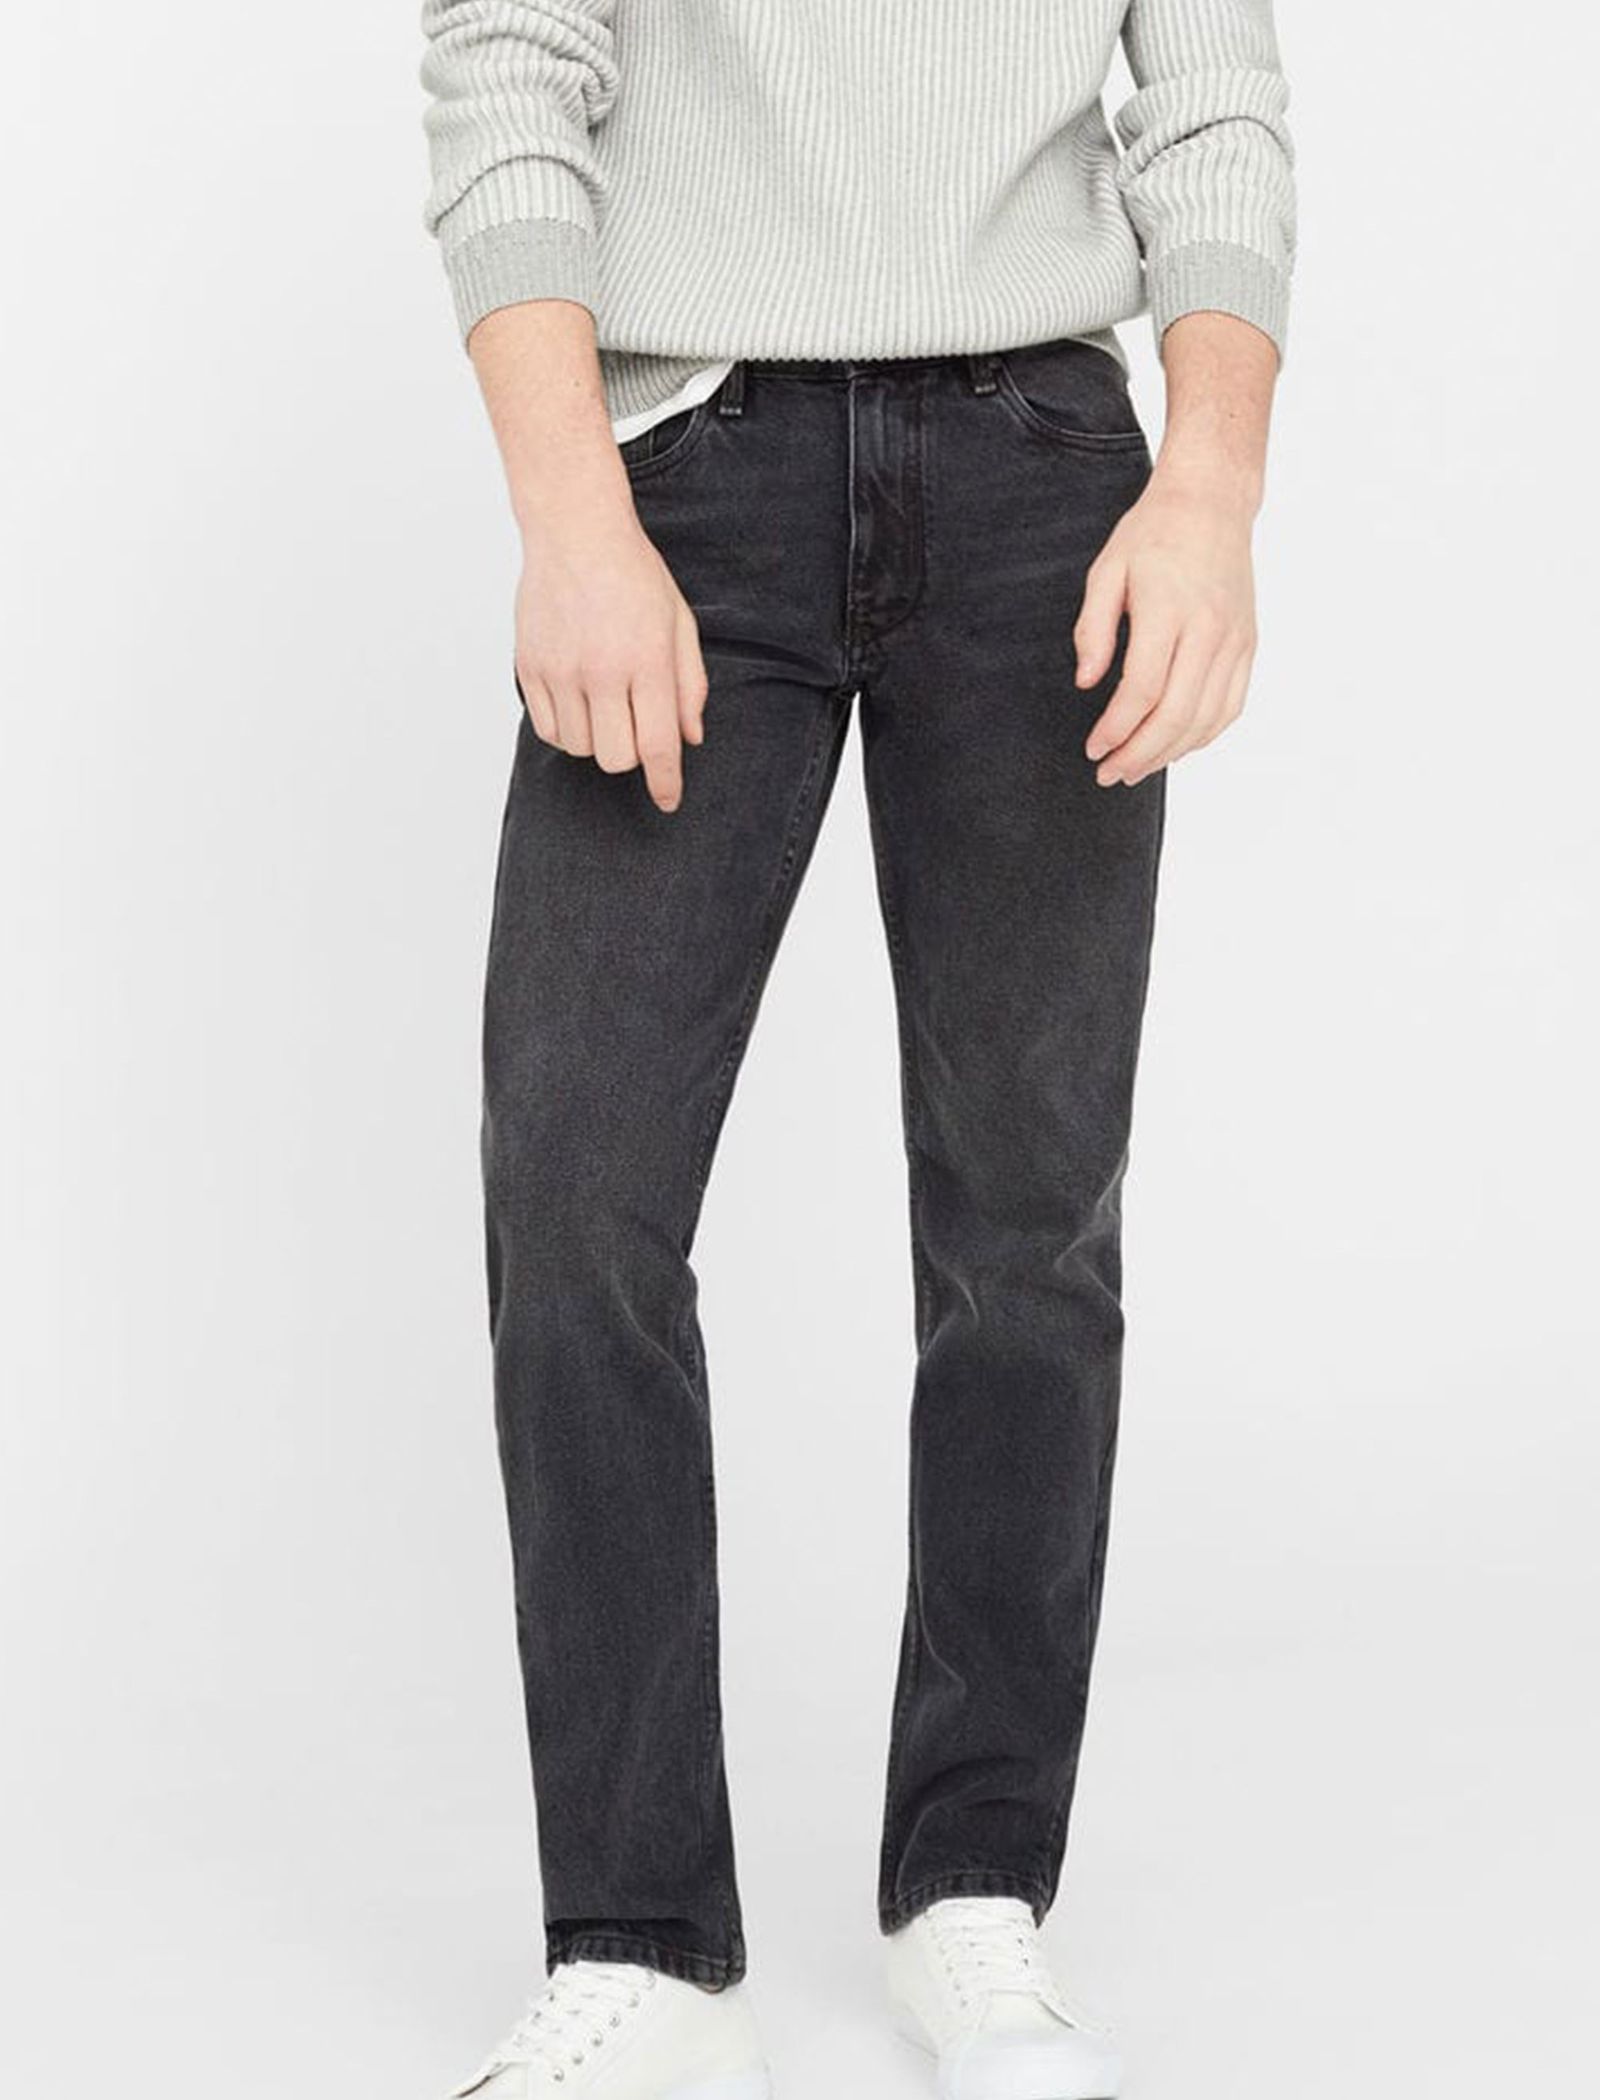 شلوار جین راسته مردانه - مانگو - زغالي - 6